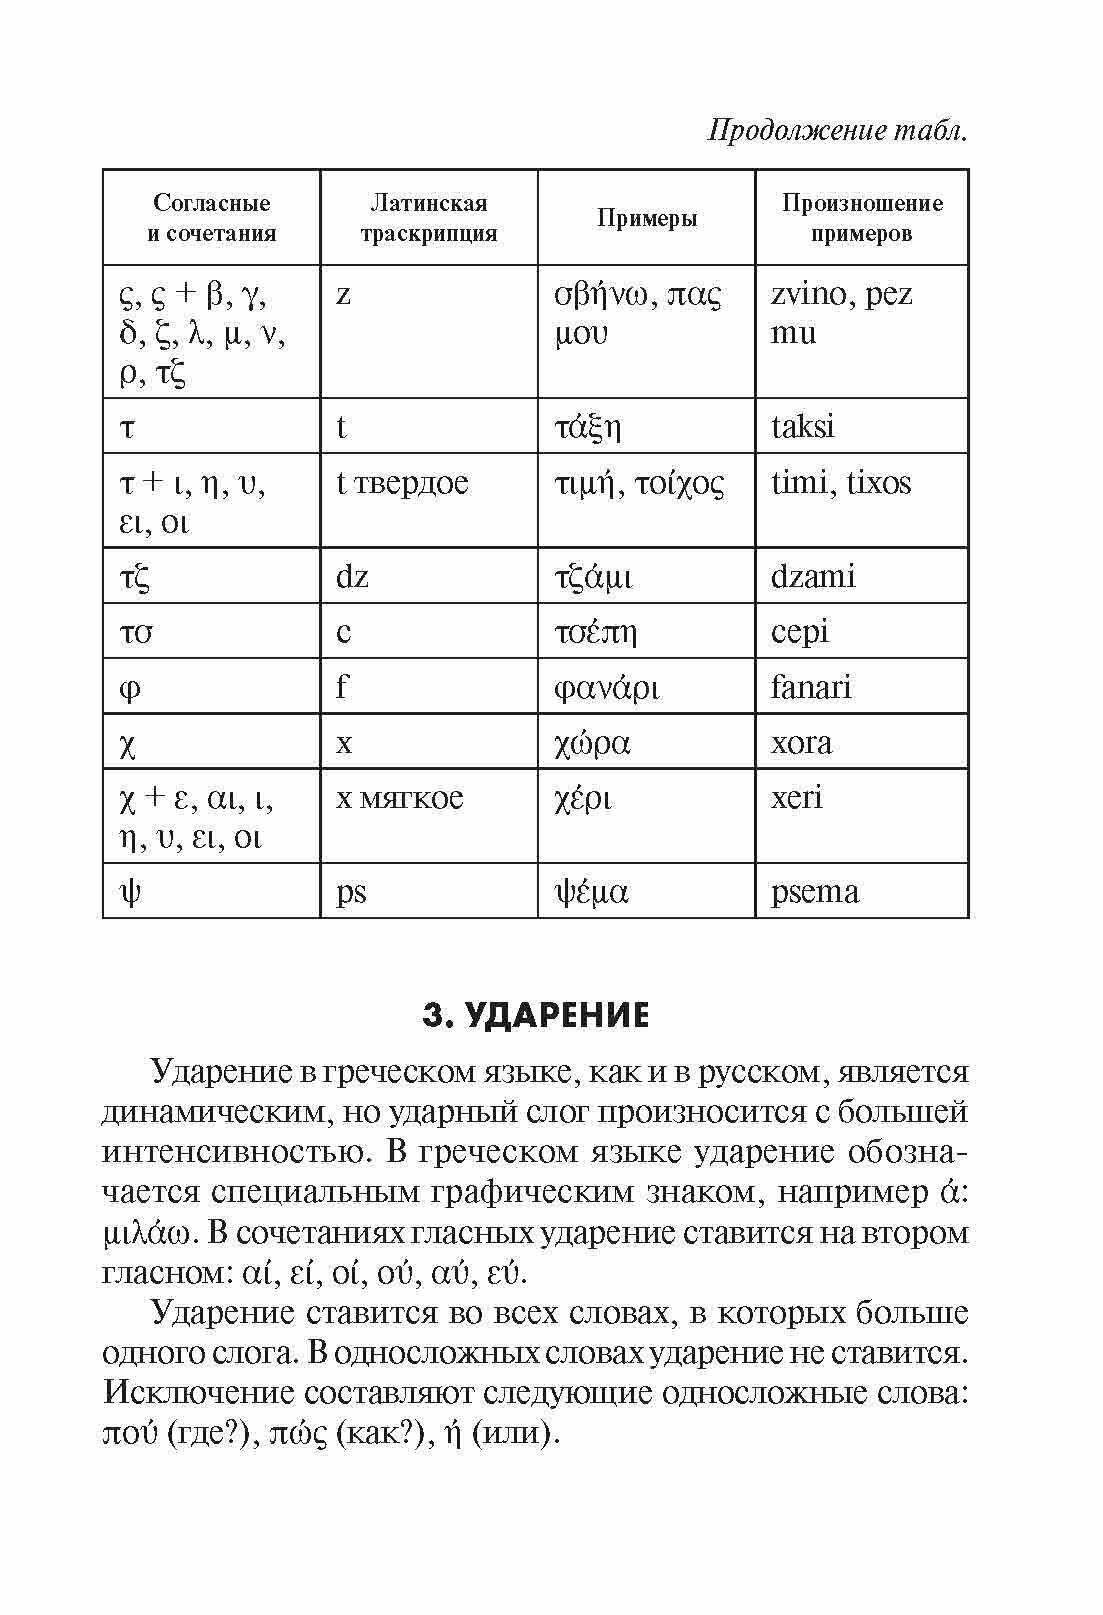 Греческая грамматика в таблицах и схемах - фото №11